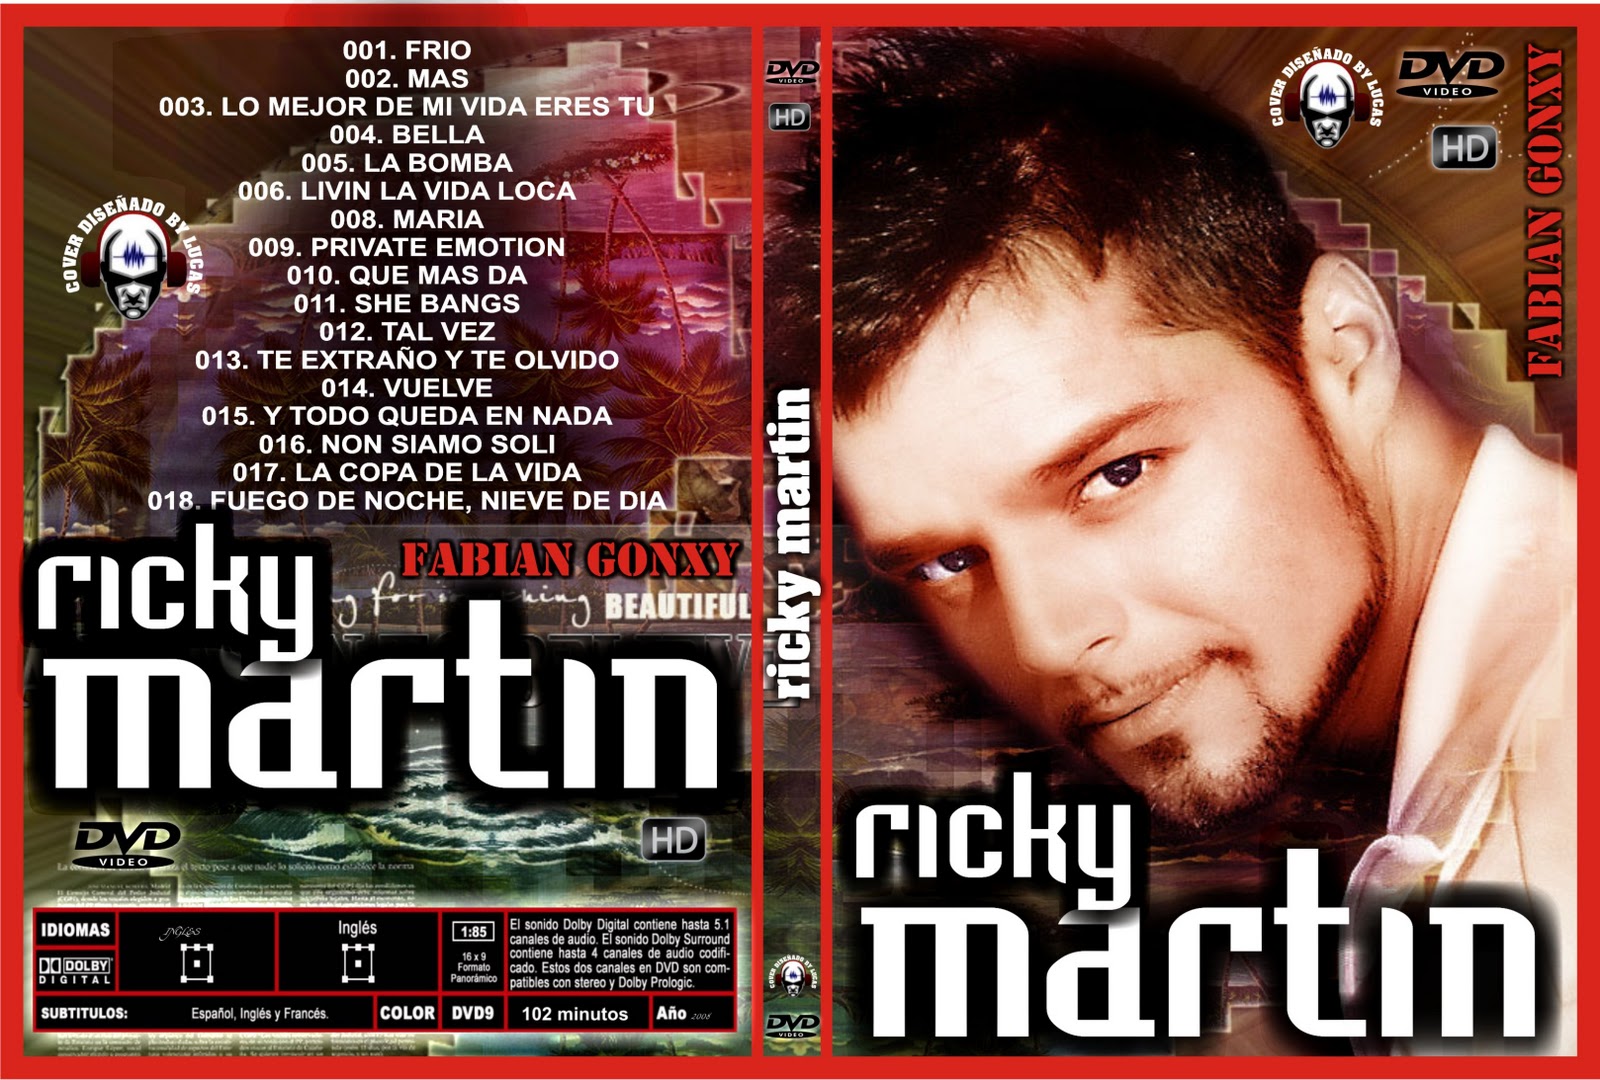 http://4.bp.blogspot.com/-luDdc_ocRS8/Tn4cadRVBTI/AAAAAAAABL0/zGyObdb-e5o/s1600/RICKY+MARTIN+-+2011.jpg